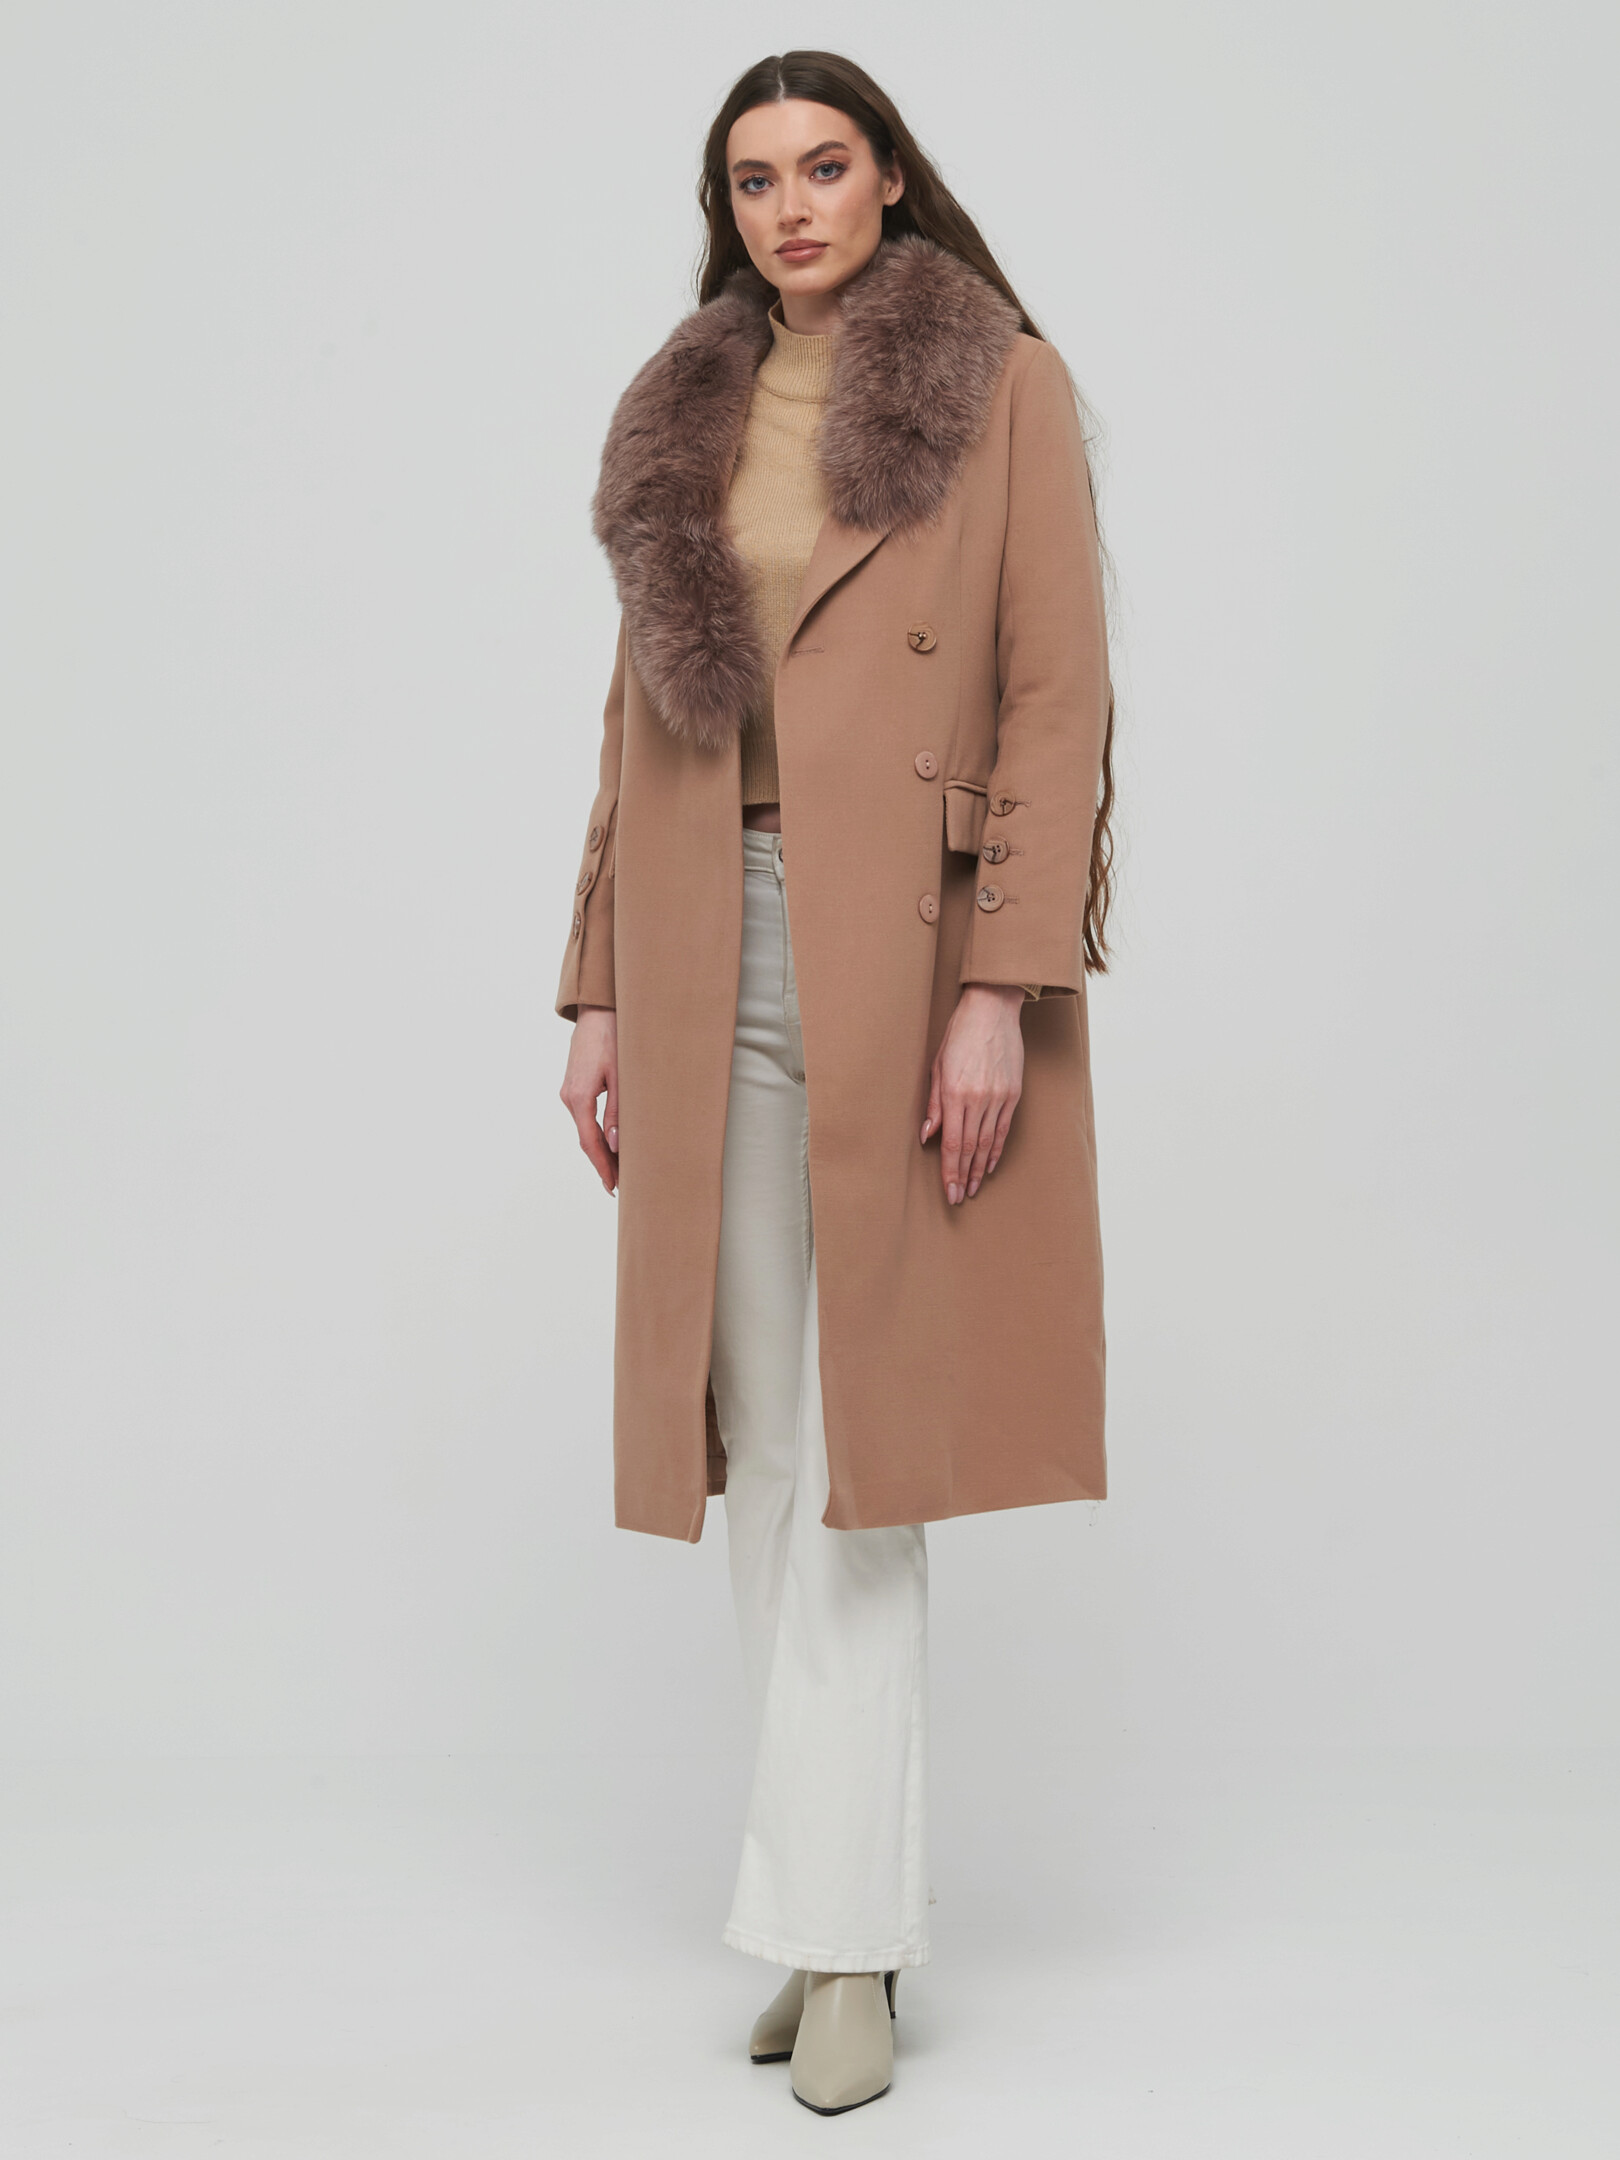 Пальто женское Giulia Rosetti 58314 коричневое 42 RU